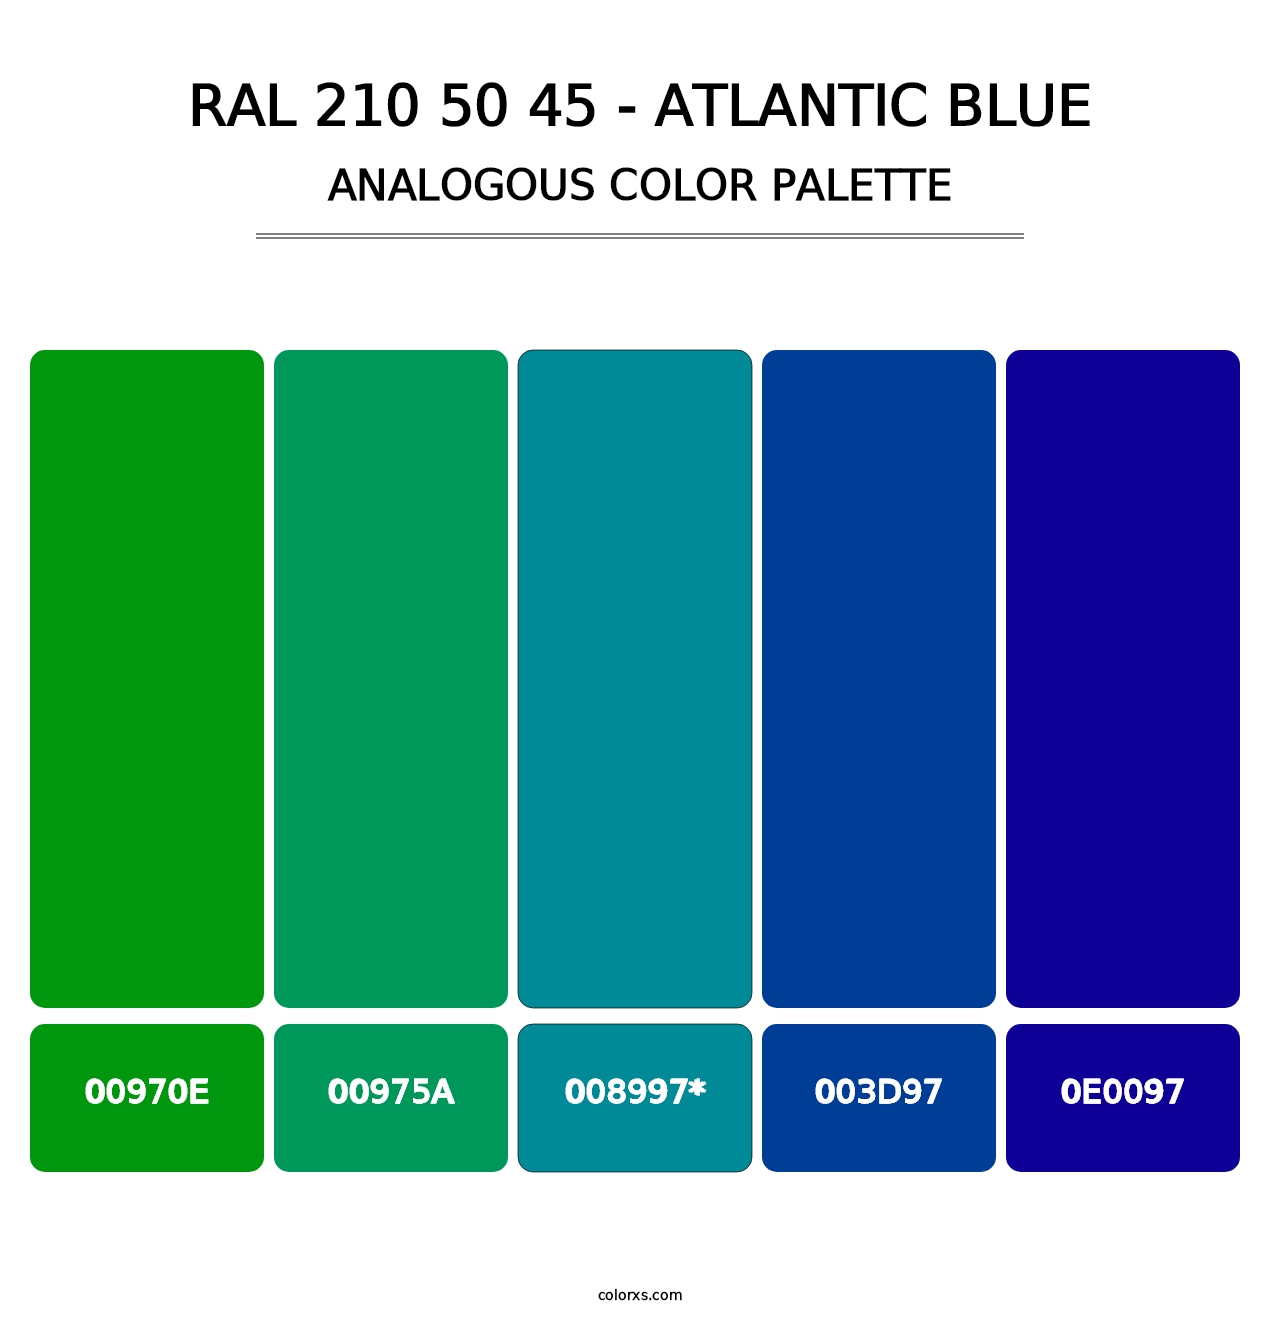 RAL 210 50 45 - Atlantic Blue - Analogous Color Palette